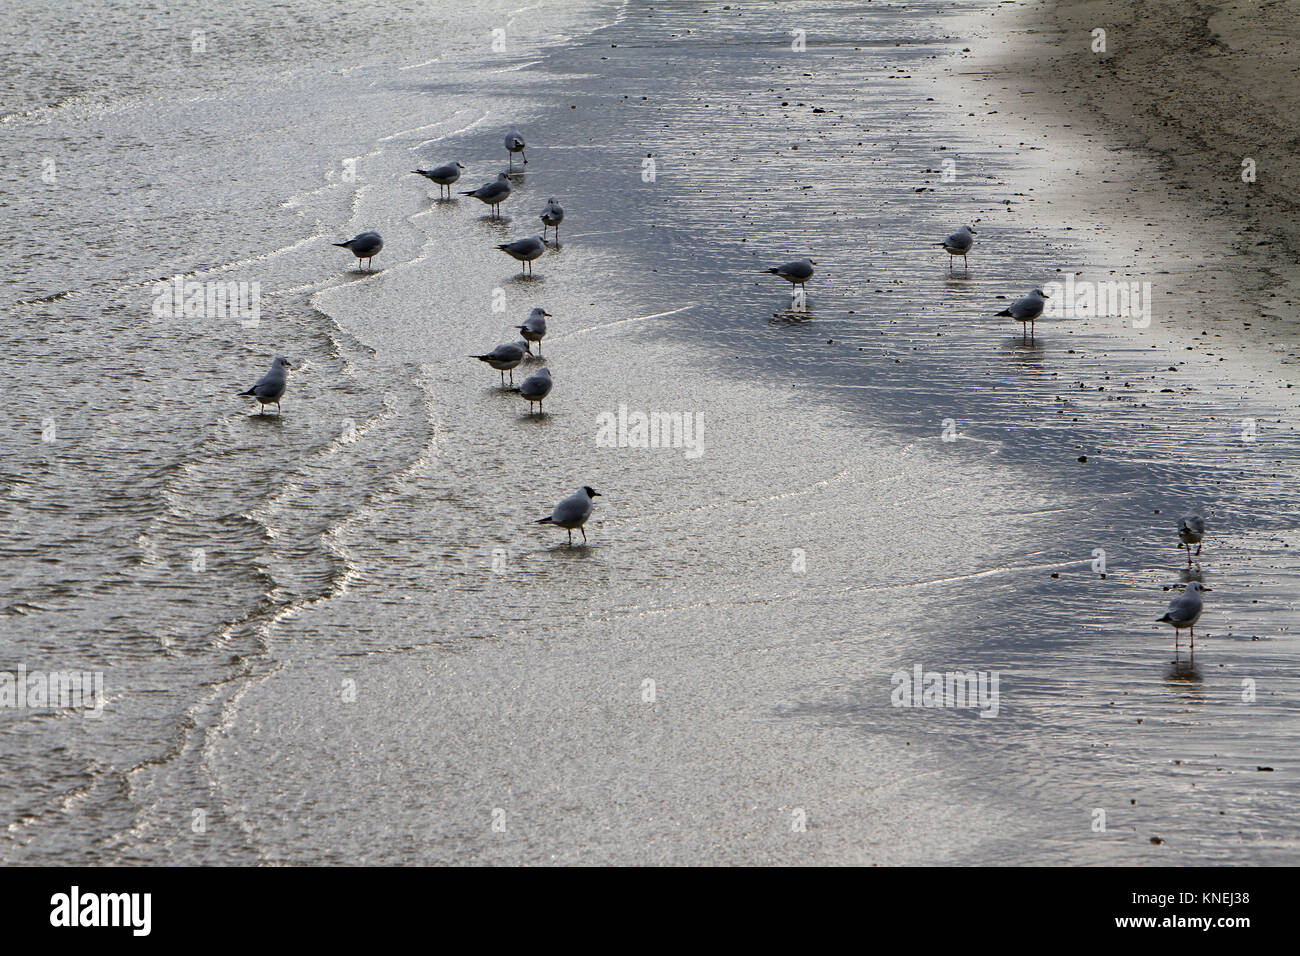 Reflet de mouettes sur la plage - Senigallia - Plage de l'Adriatique - Italie Banque D'Images